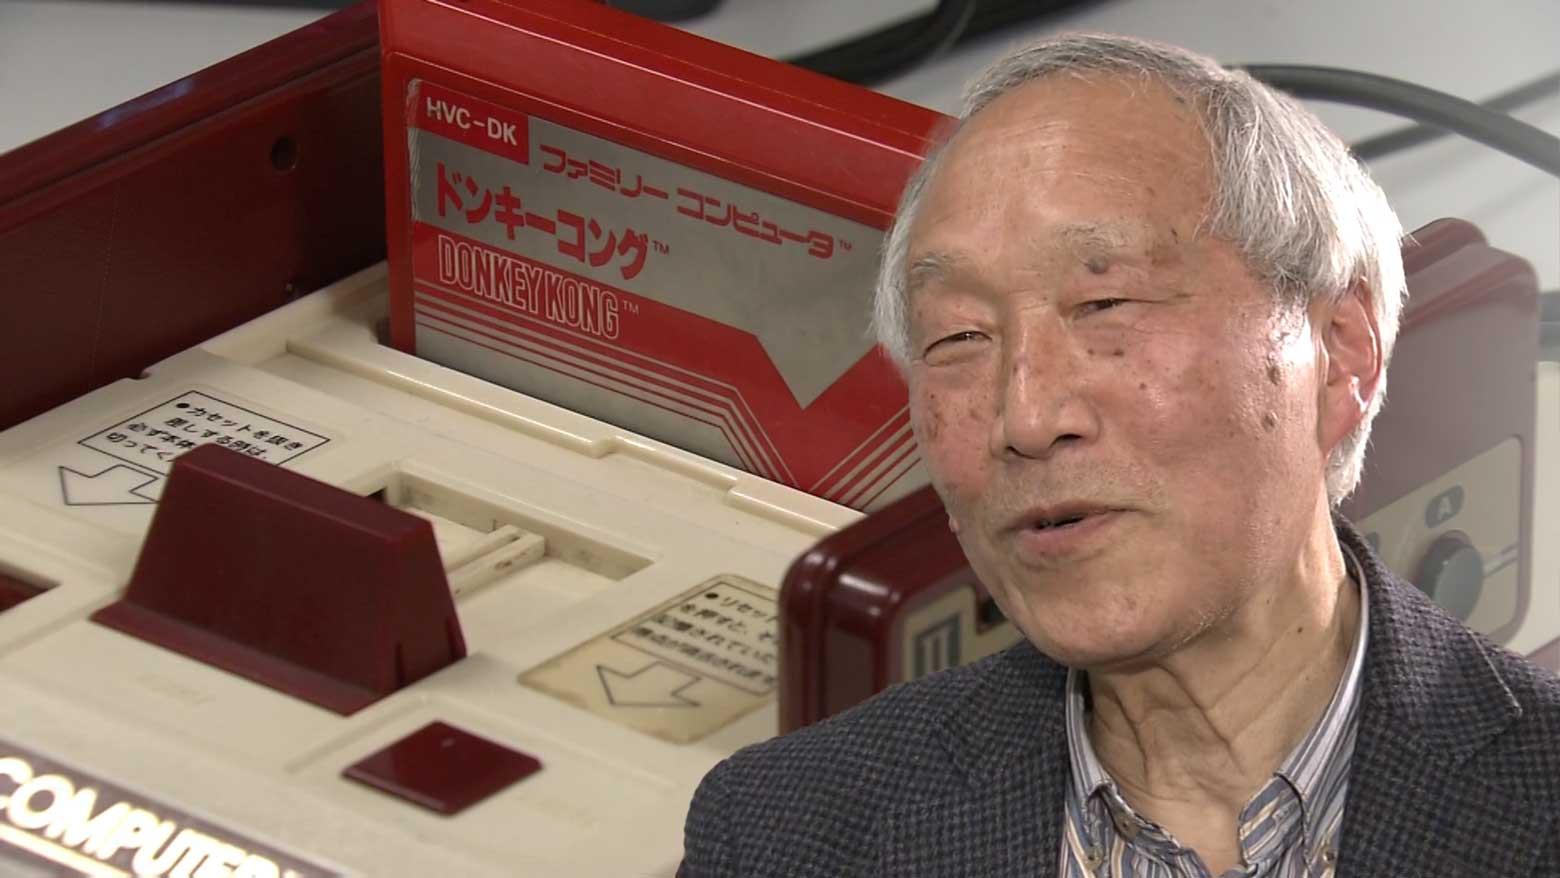 Tưởng nhớ ông Uemura Masayuki - người sáng tạo máy trò chơi điện tử Nintendo